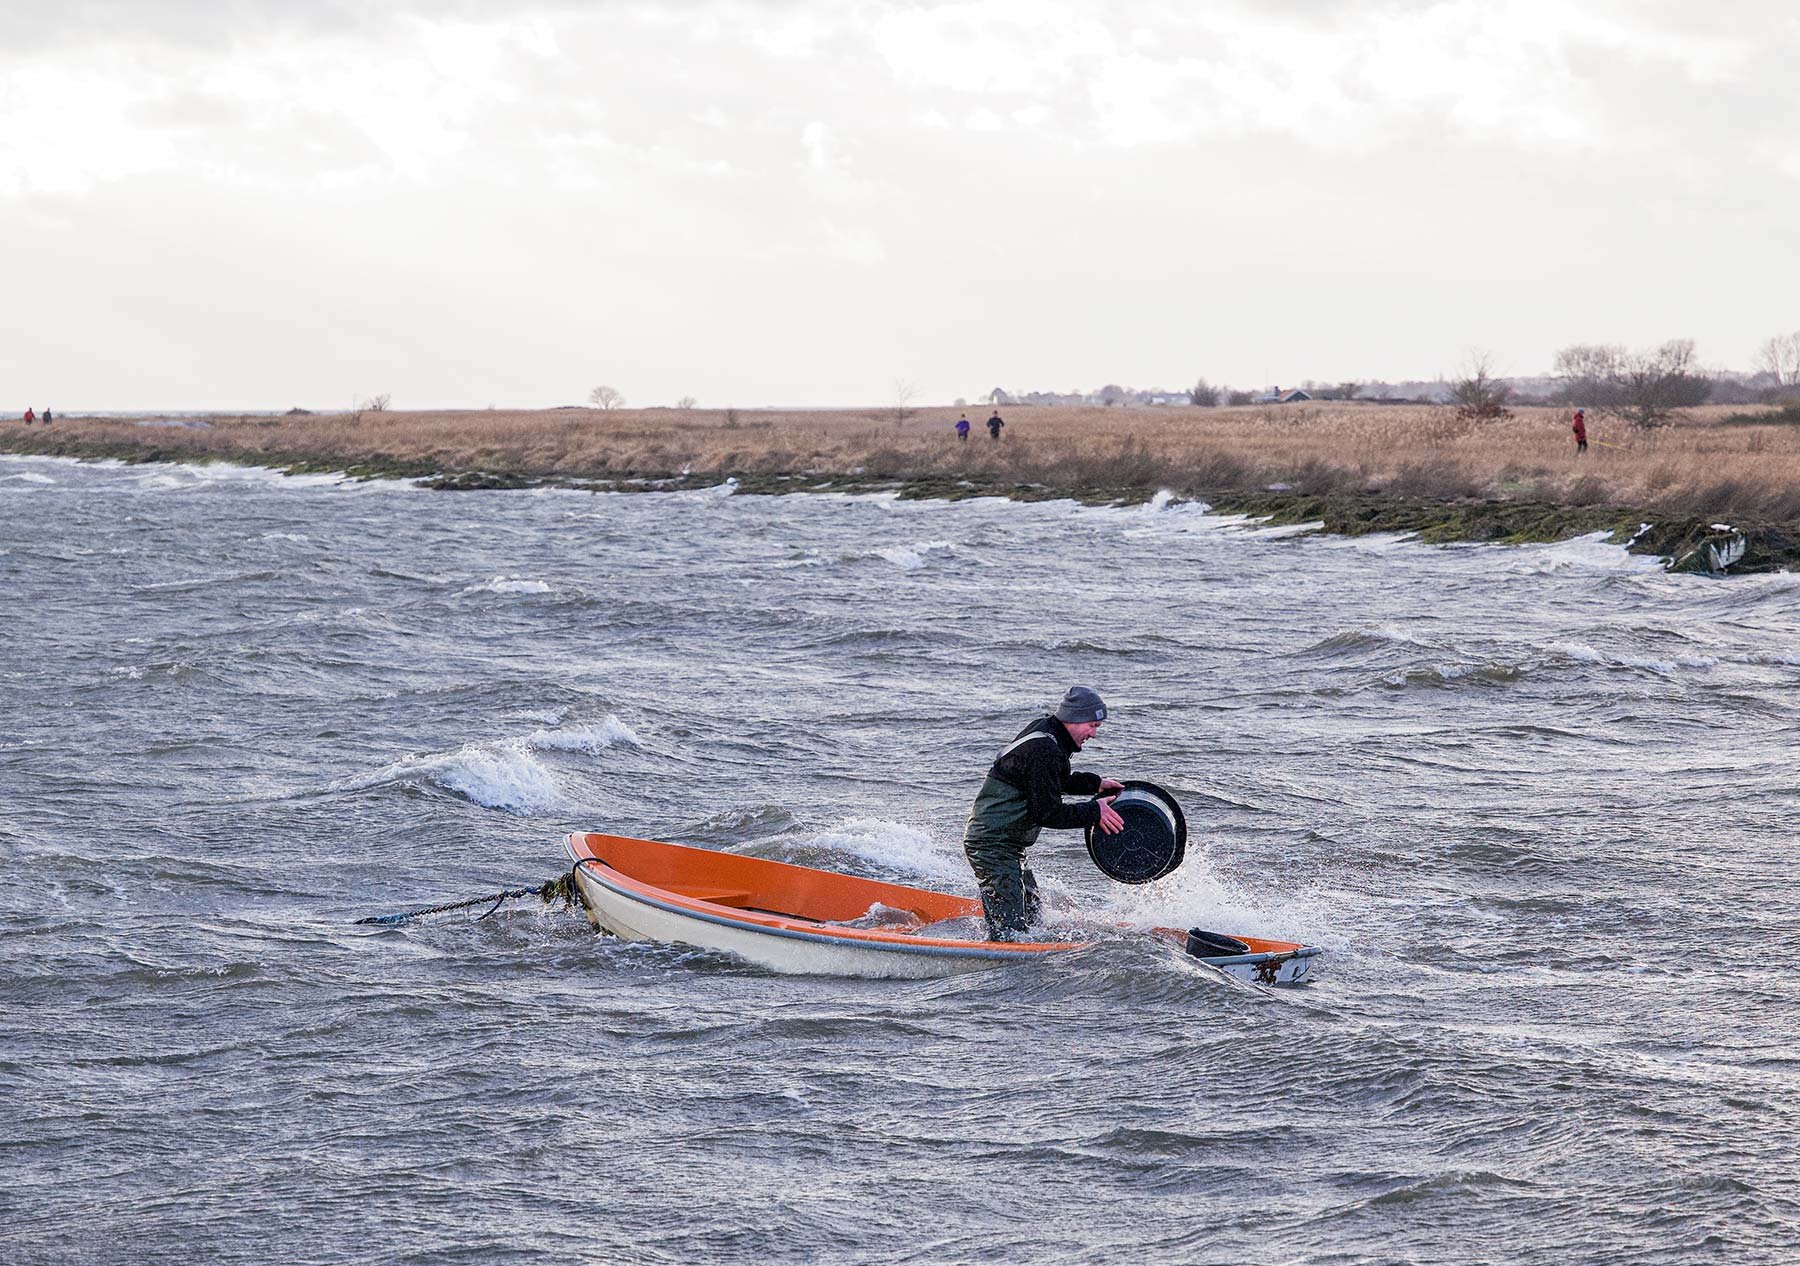 En hård kamp mod vinden og vandet. Foto: TorbenStender.